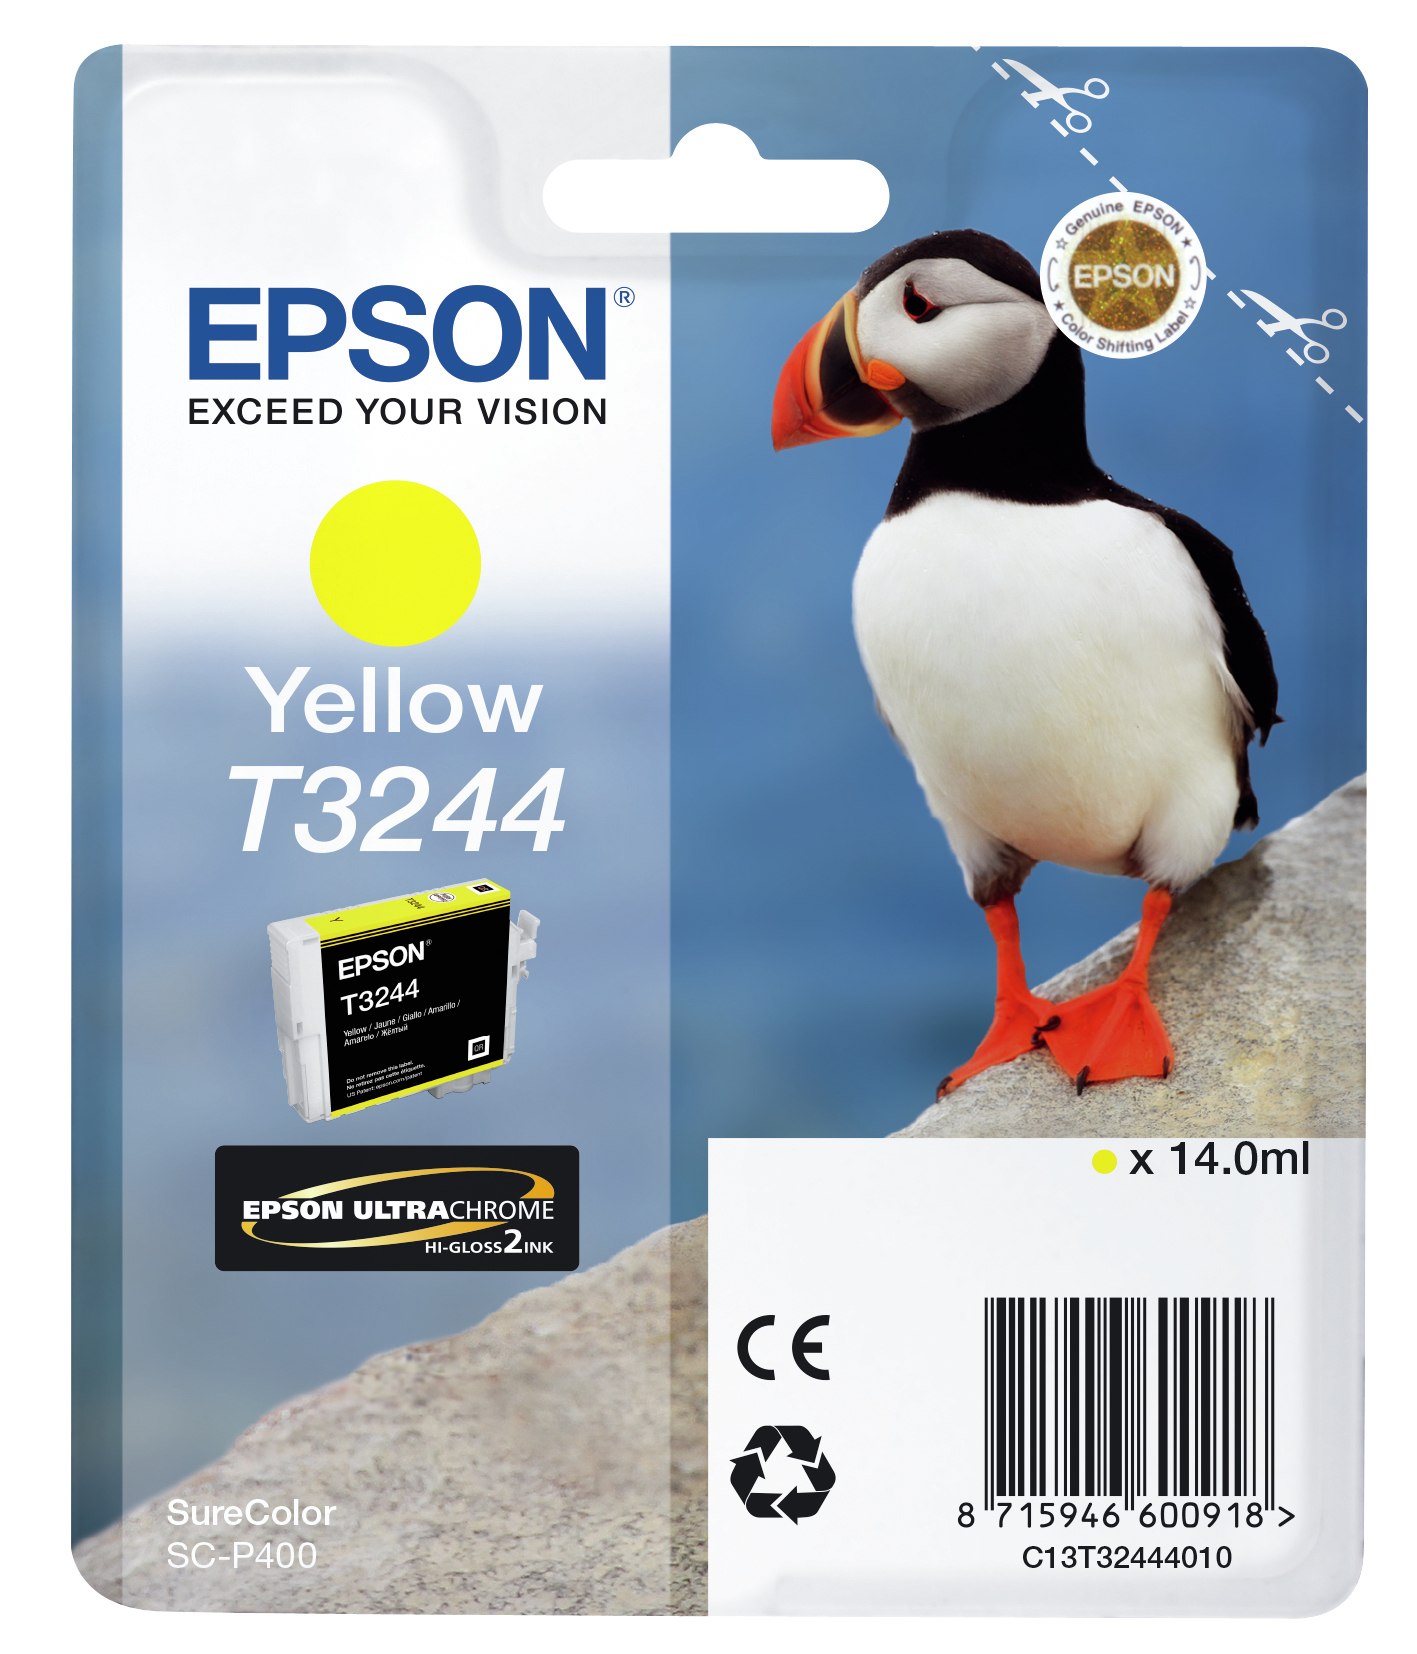 Epson T3244